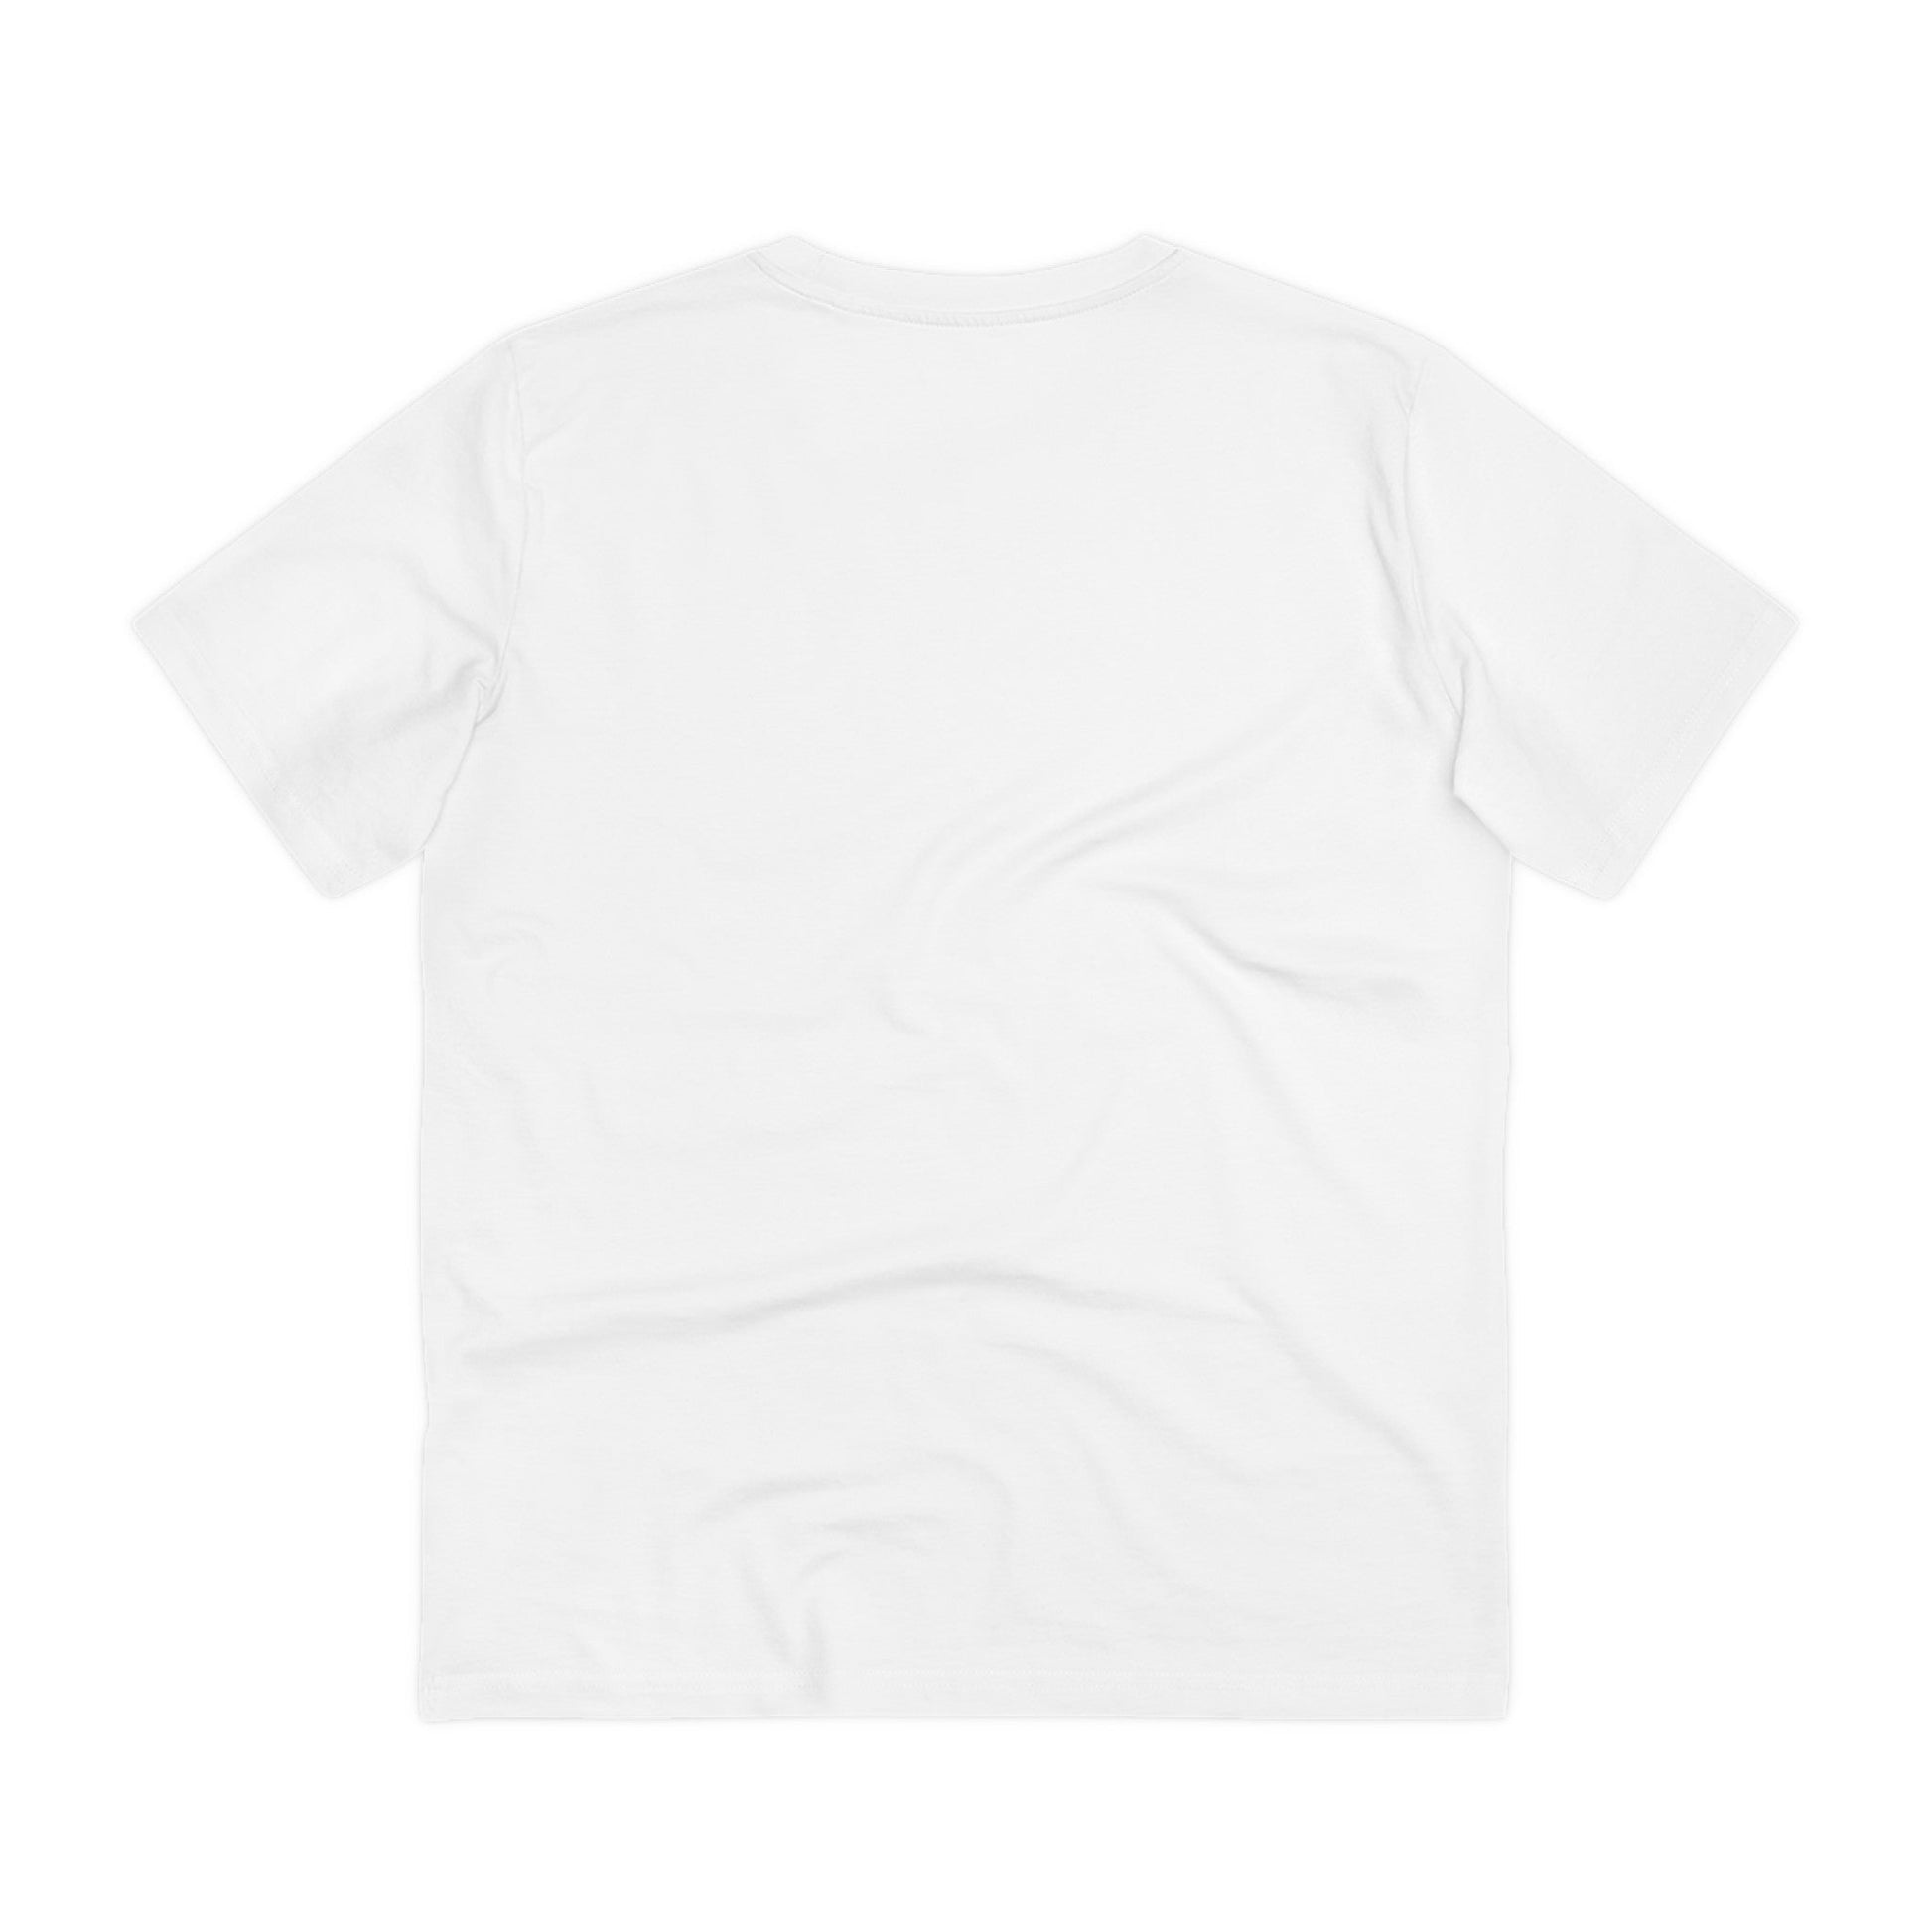 Printify T-Shirt Vespa - Streetwear - Reality Check - Front Design